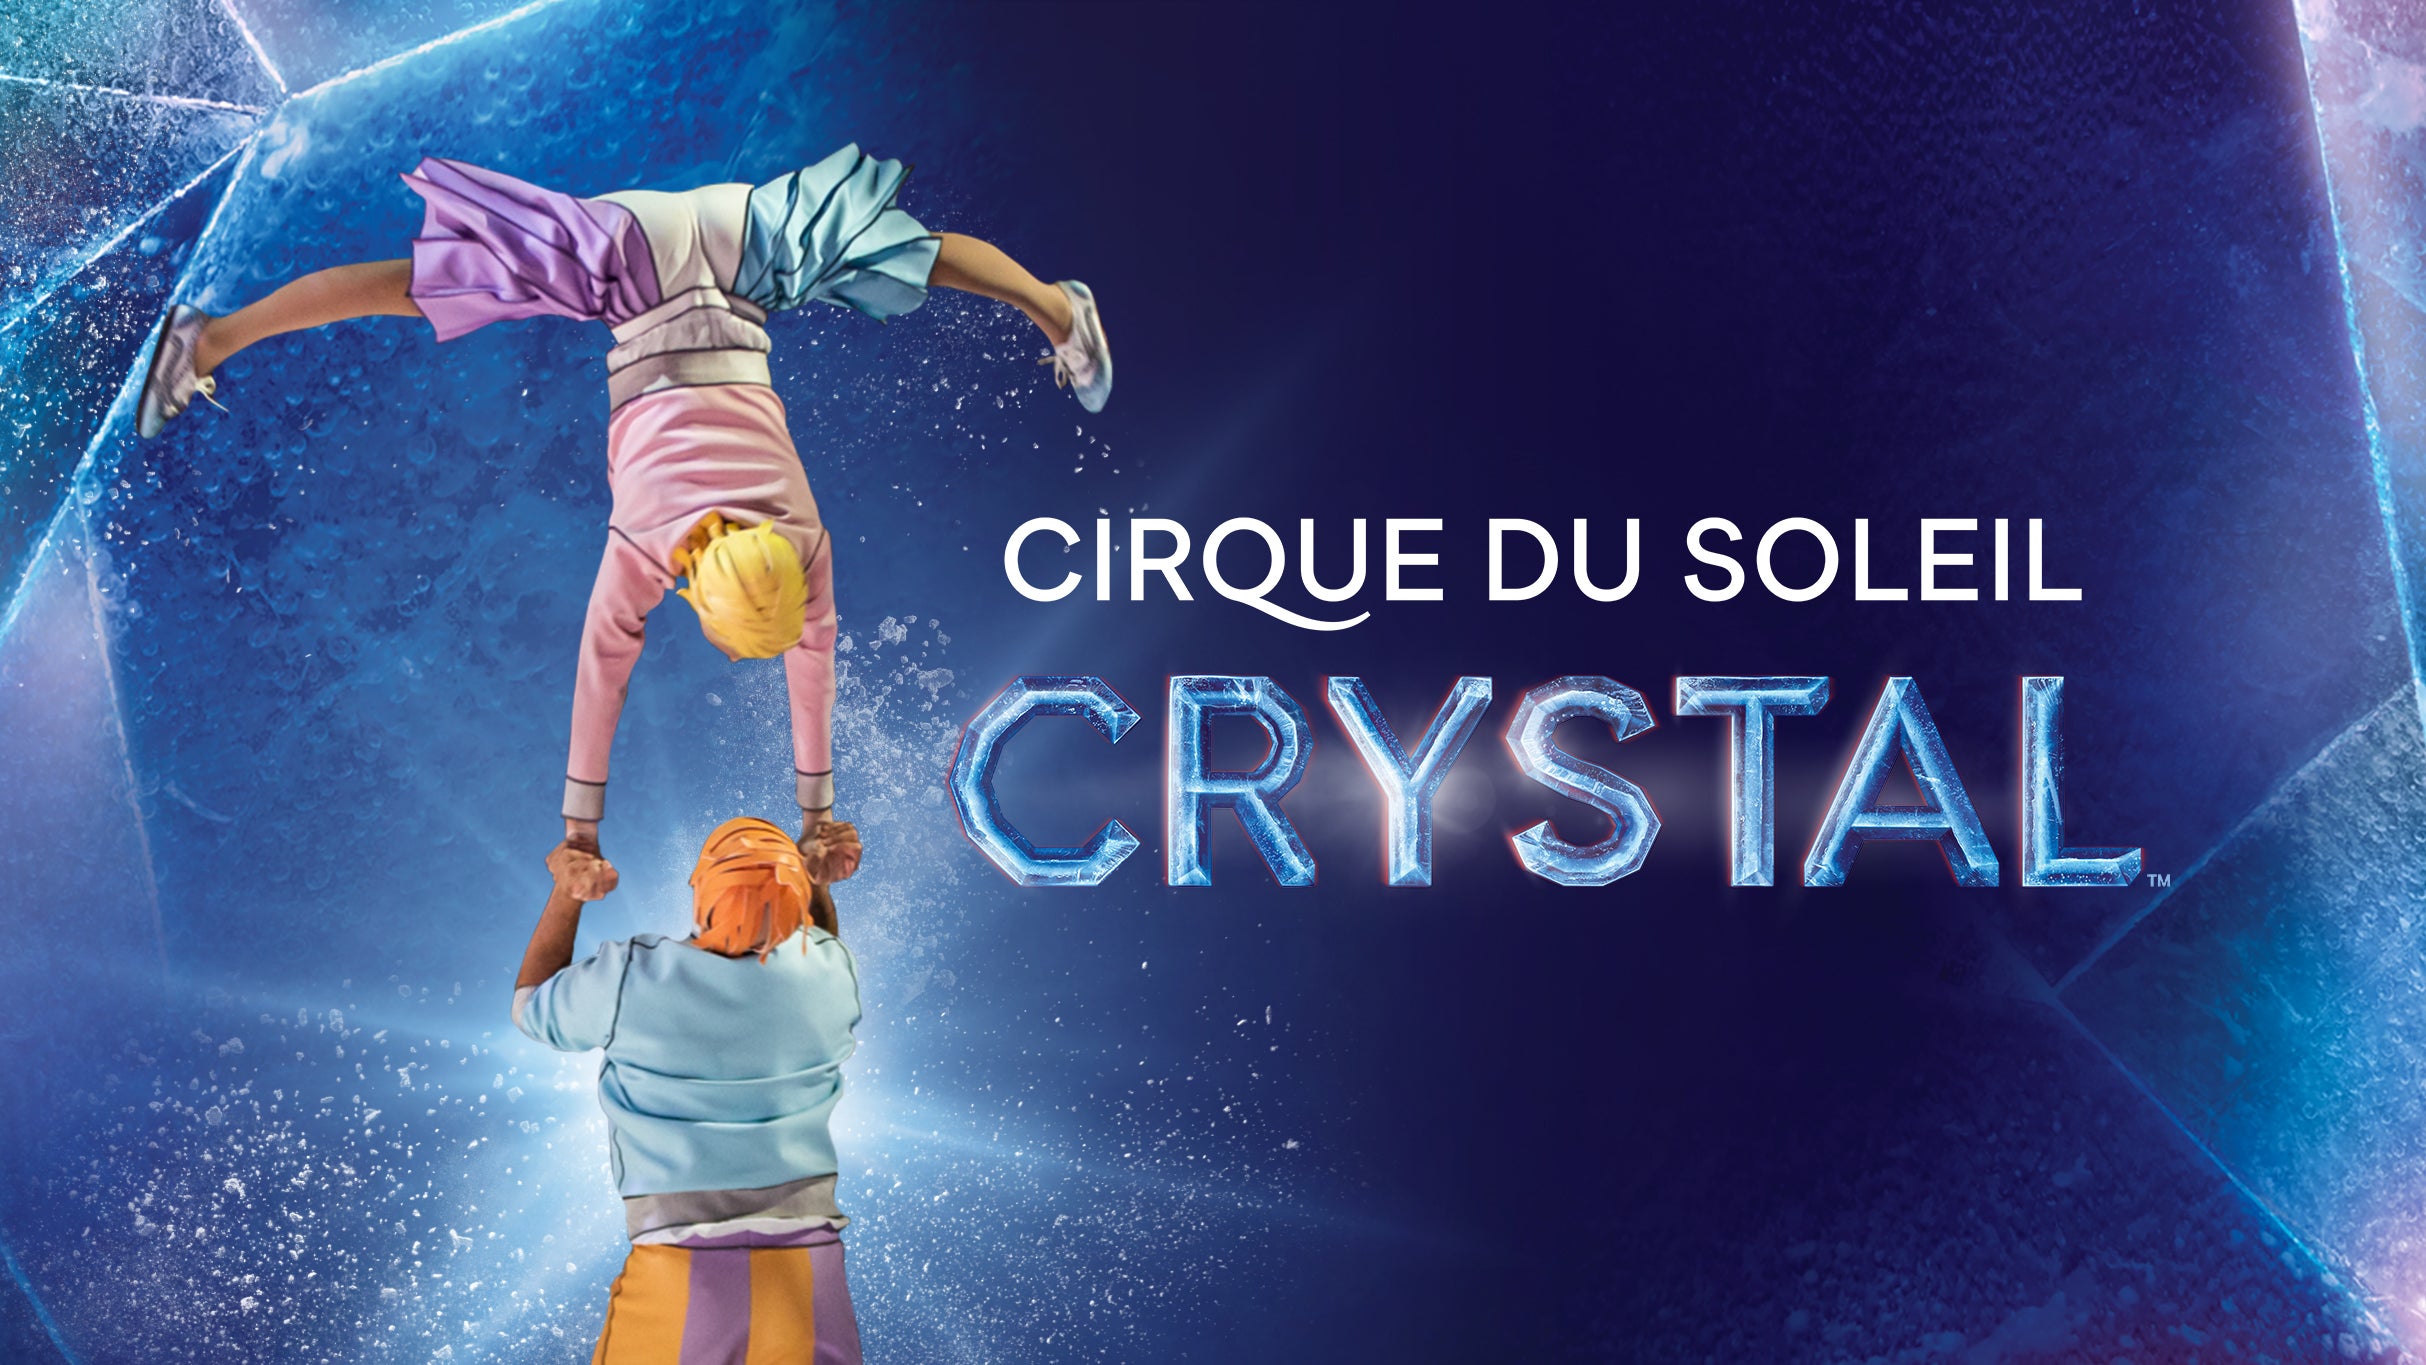 Cirque du Soleil: Crystal in Hershey promo photo for Marketing Partner presale offer code